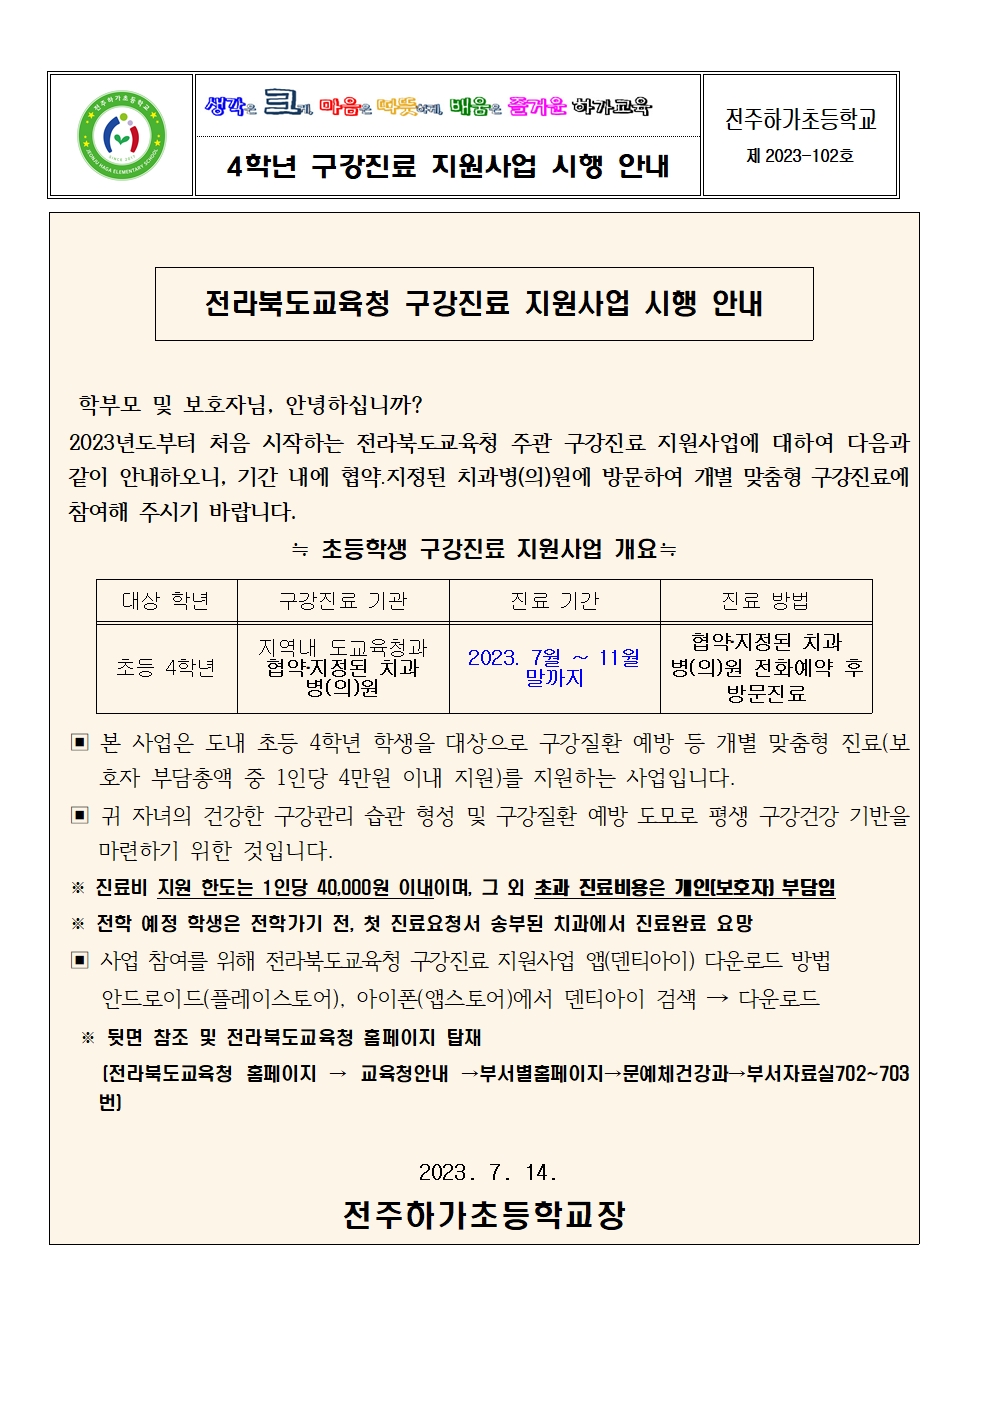 구강건강진료지원사업 안내문001